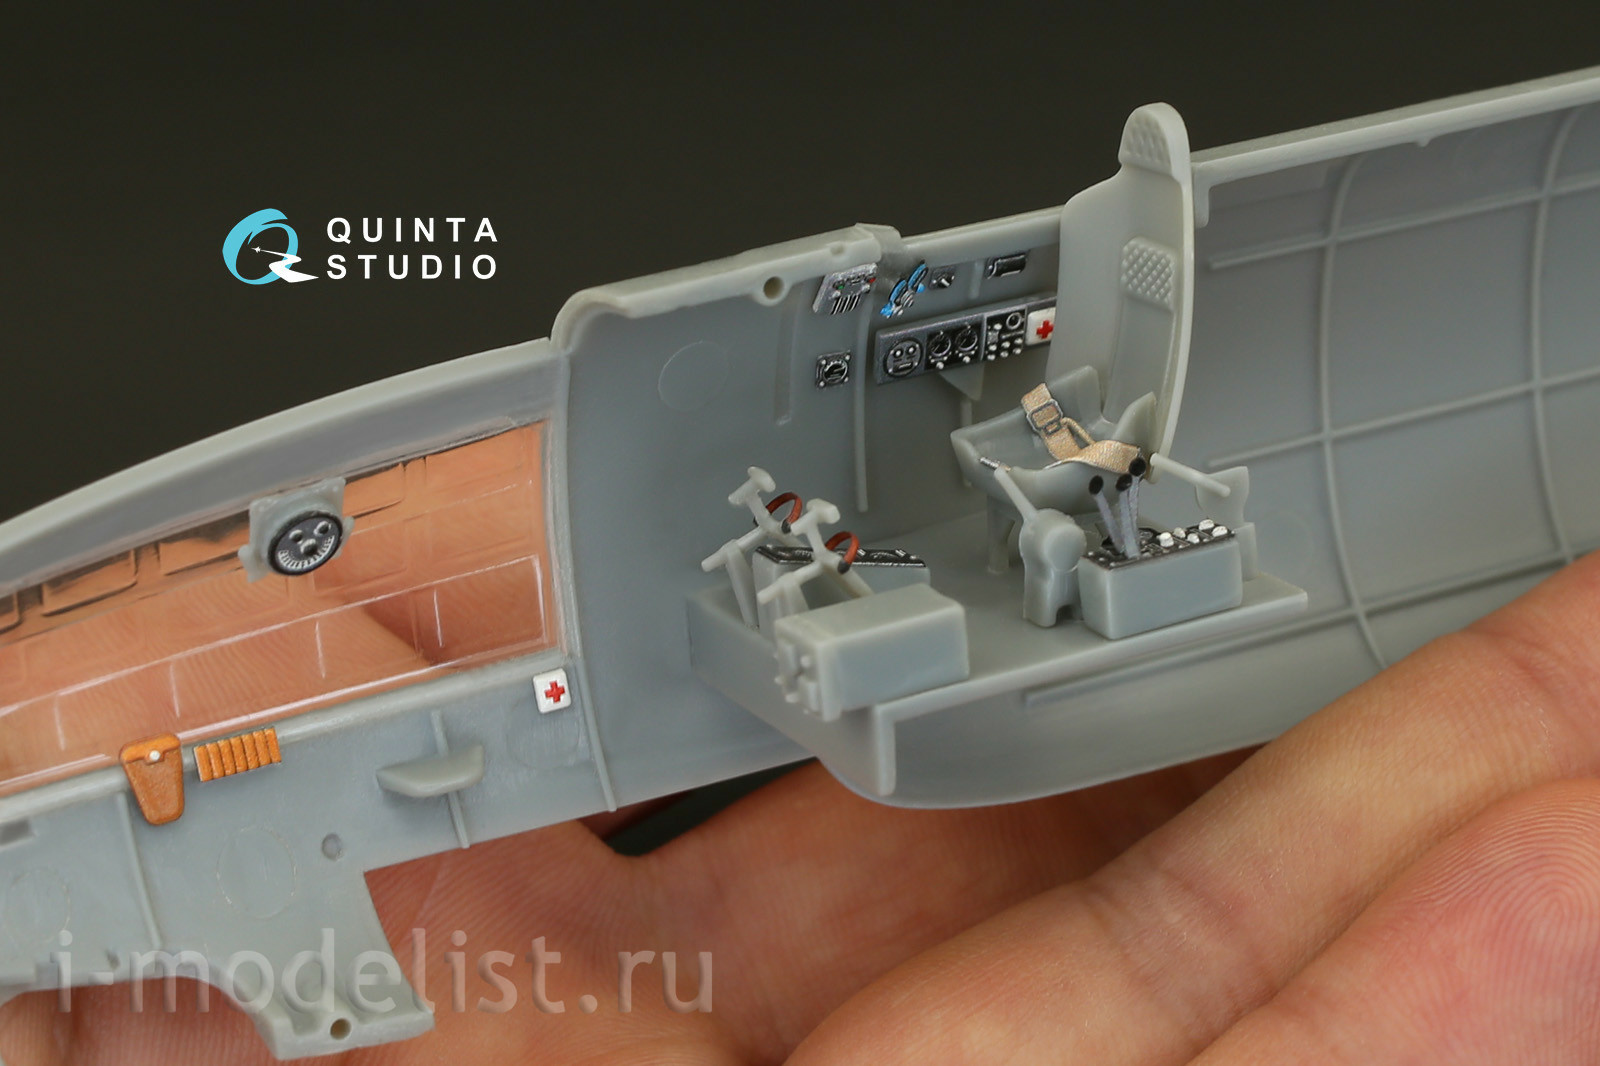 QD48100 Quinta Studio 1/48 3D Cabin Interior Decal IL-4 (for Xuntong model)